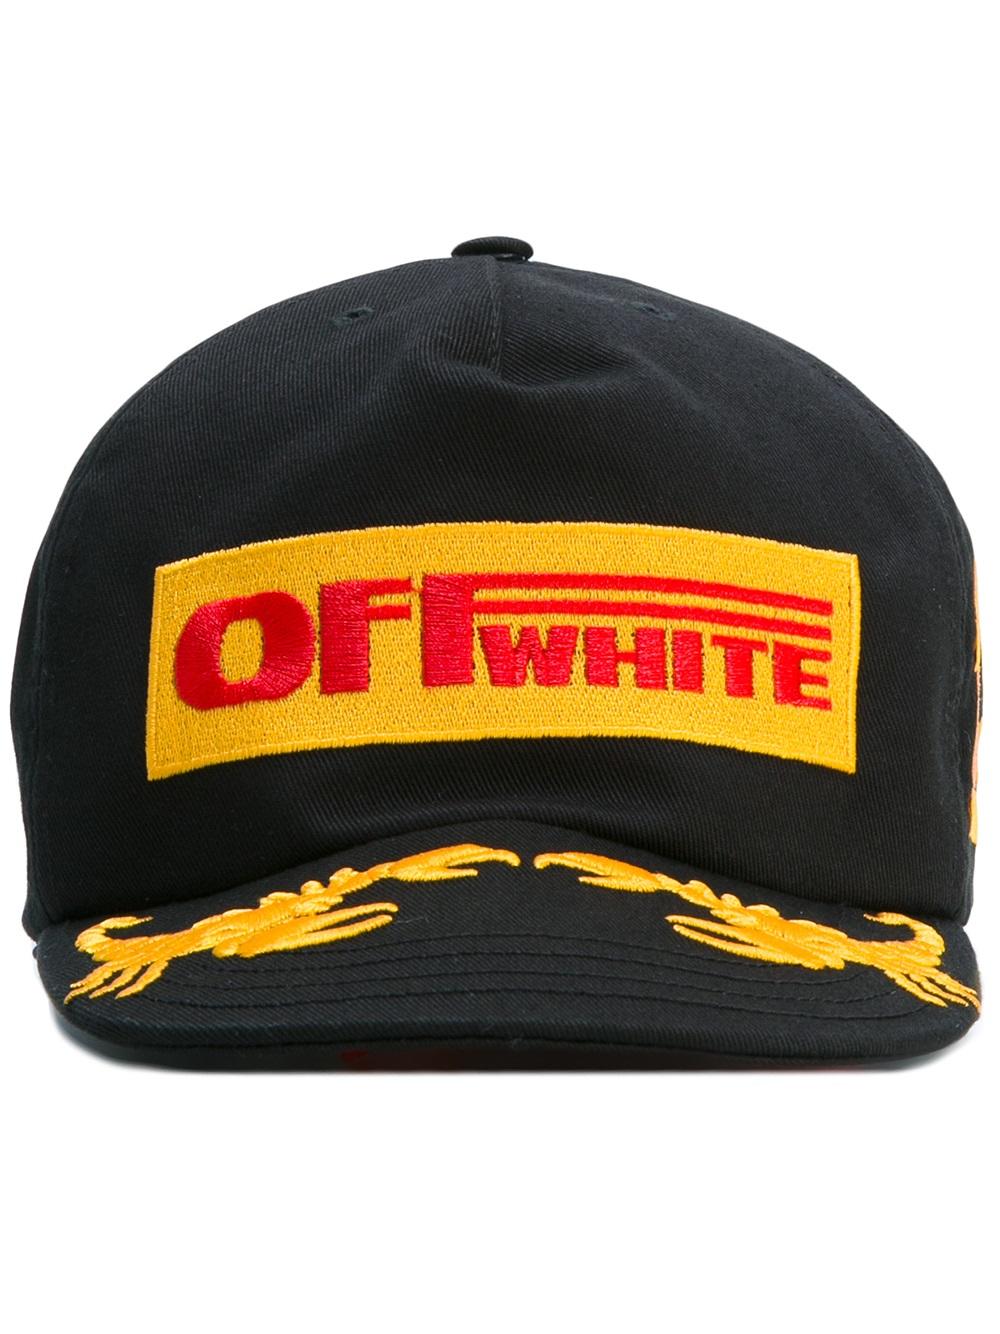 Off-White logo patch cap 1088 BLACK Men Accessories Hats